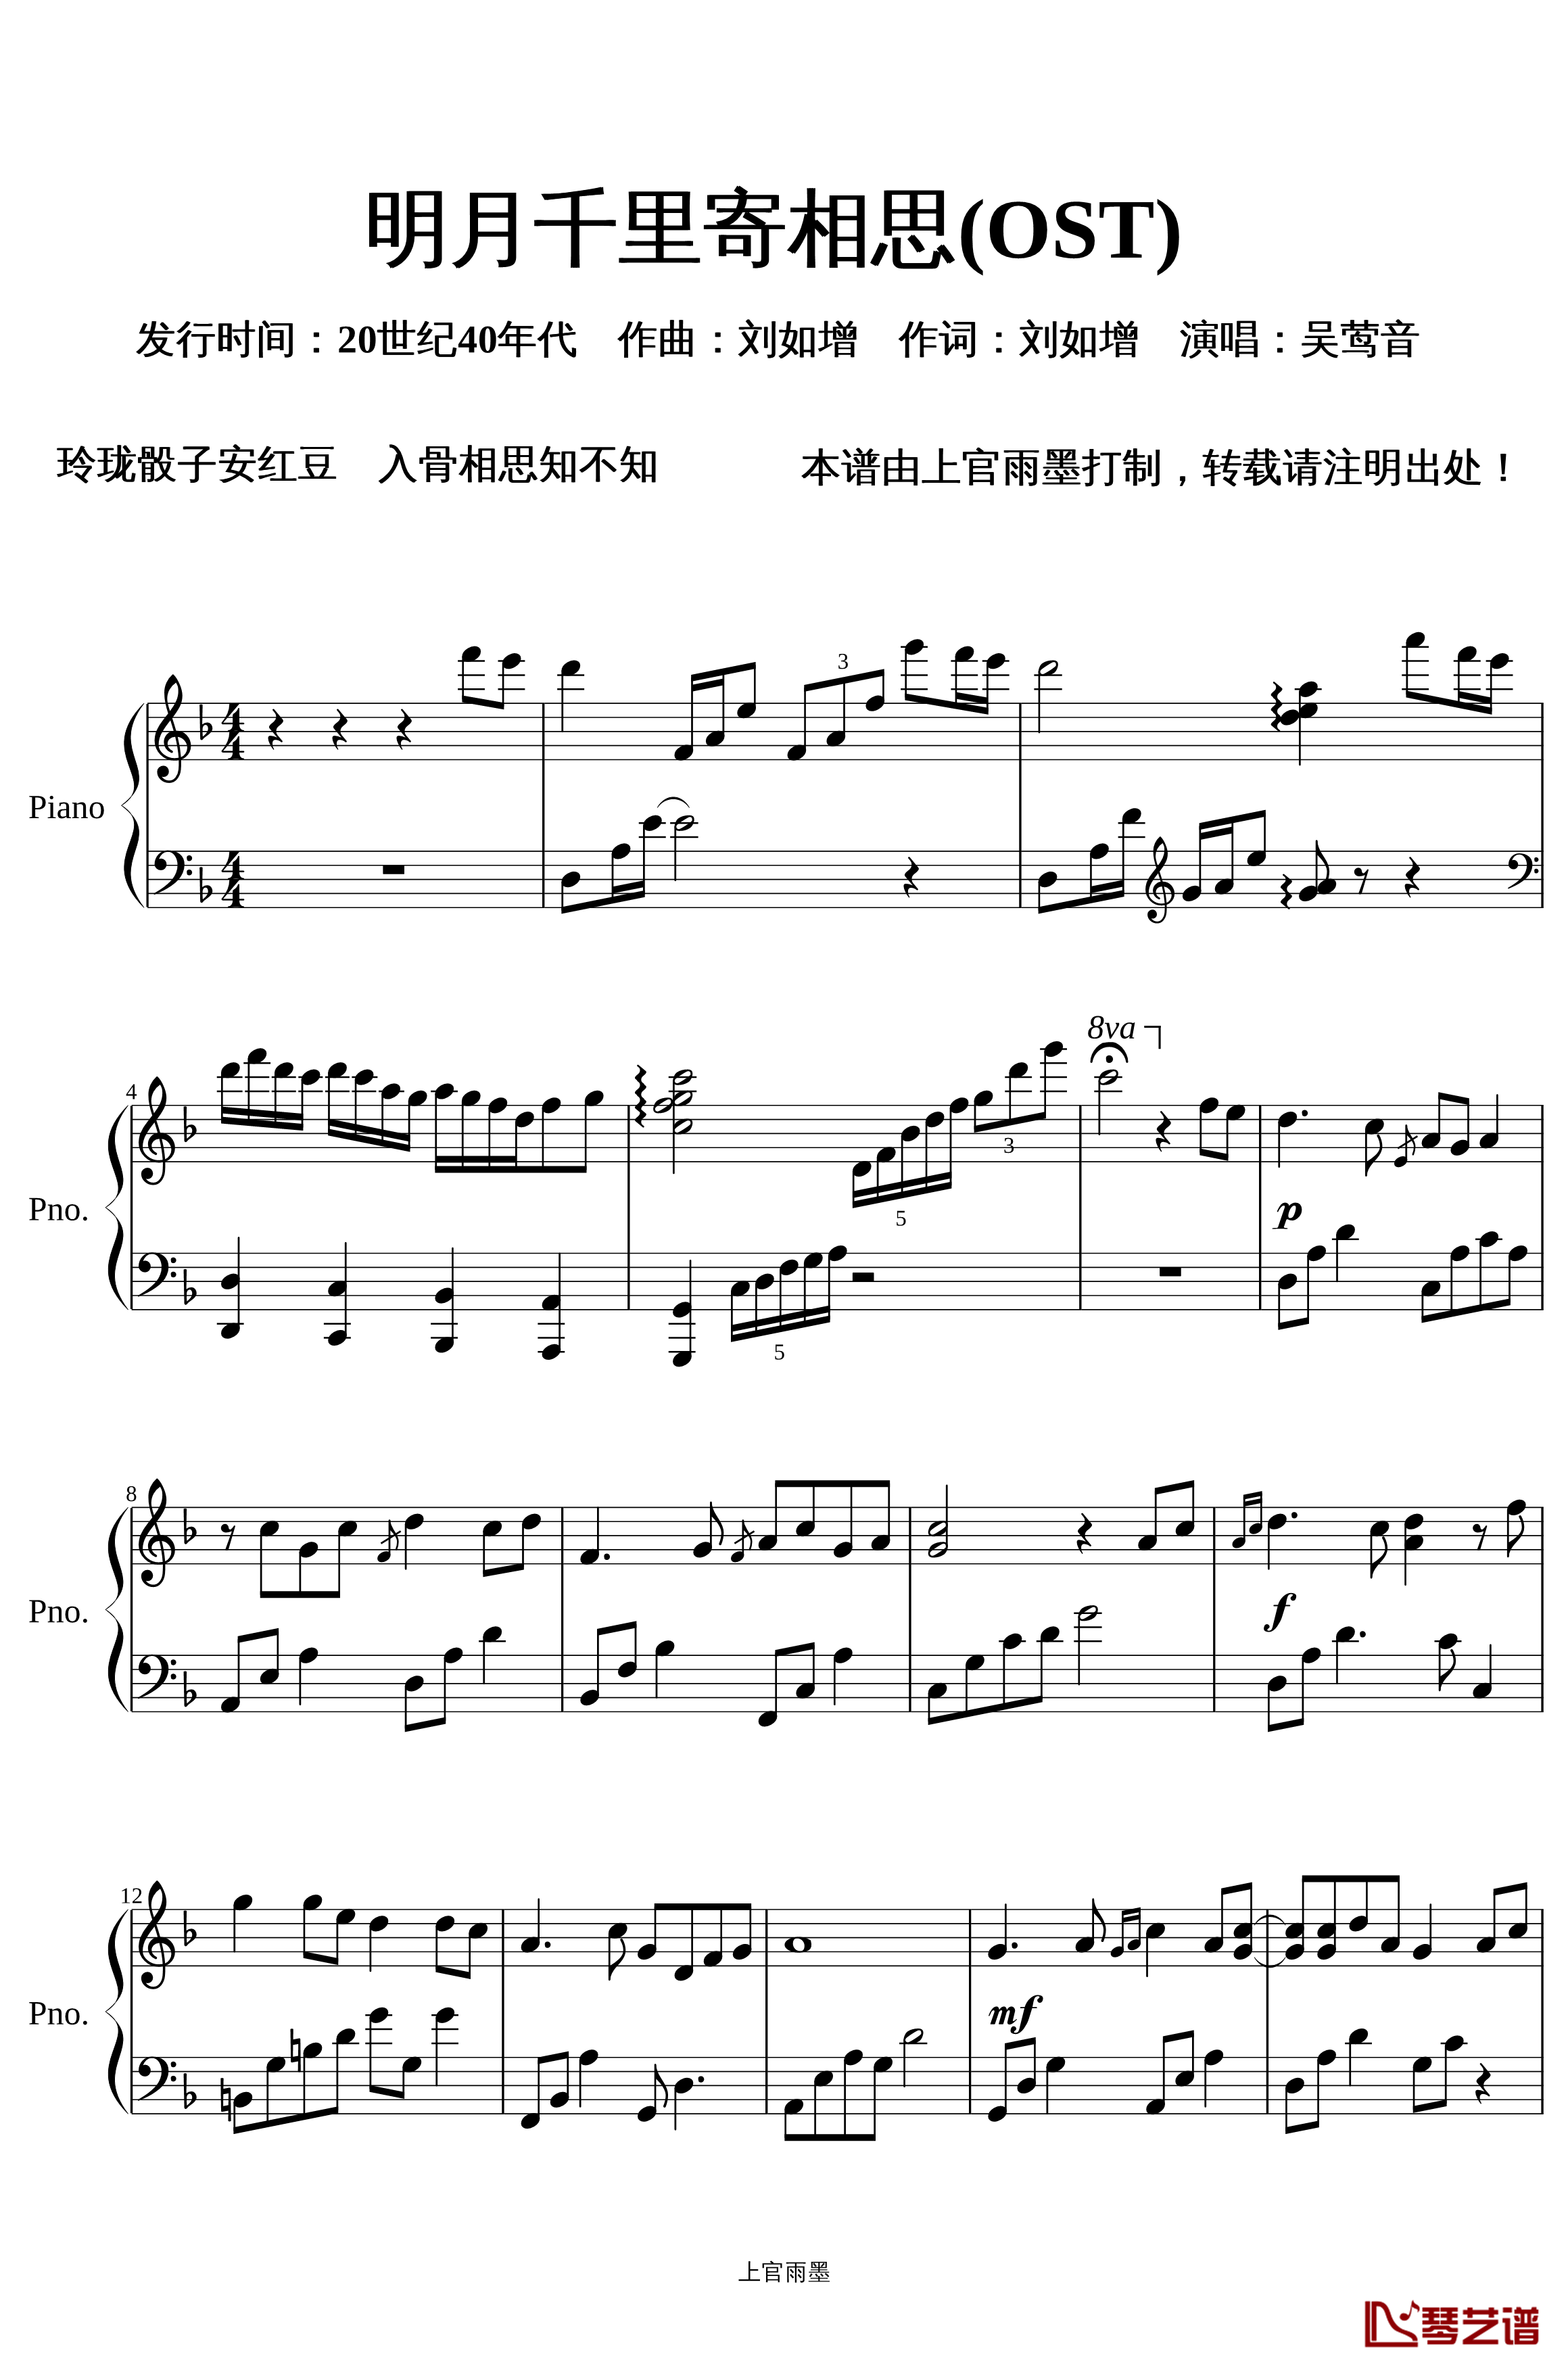 明月千里寄相思钢琴谱-OST-蔡琴1